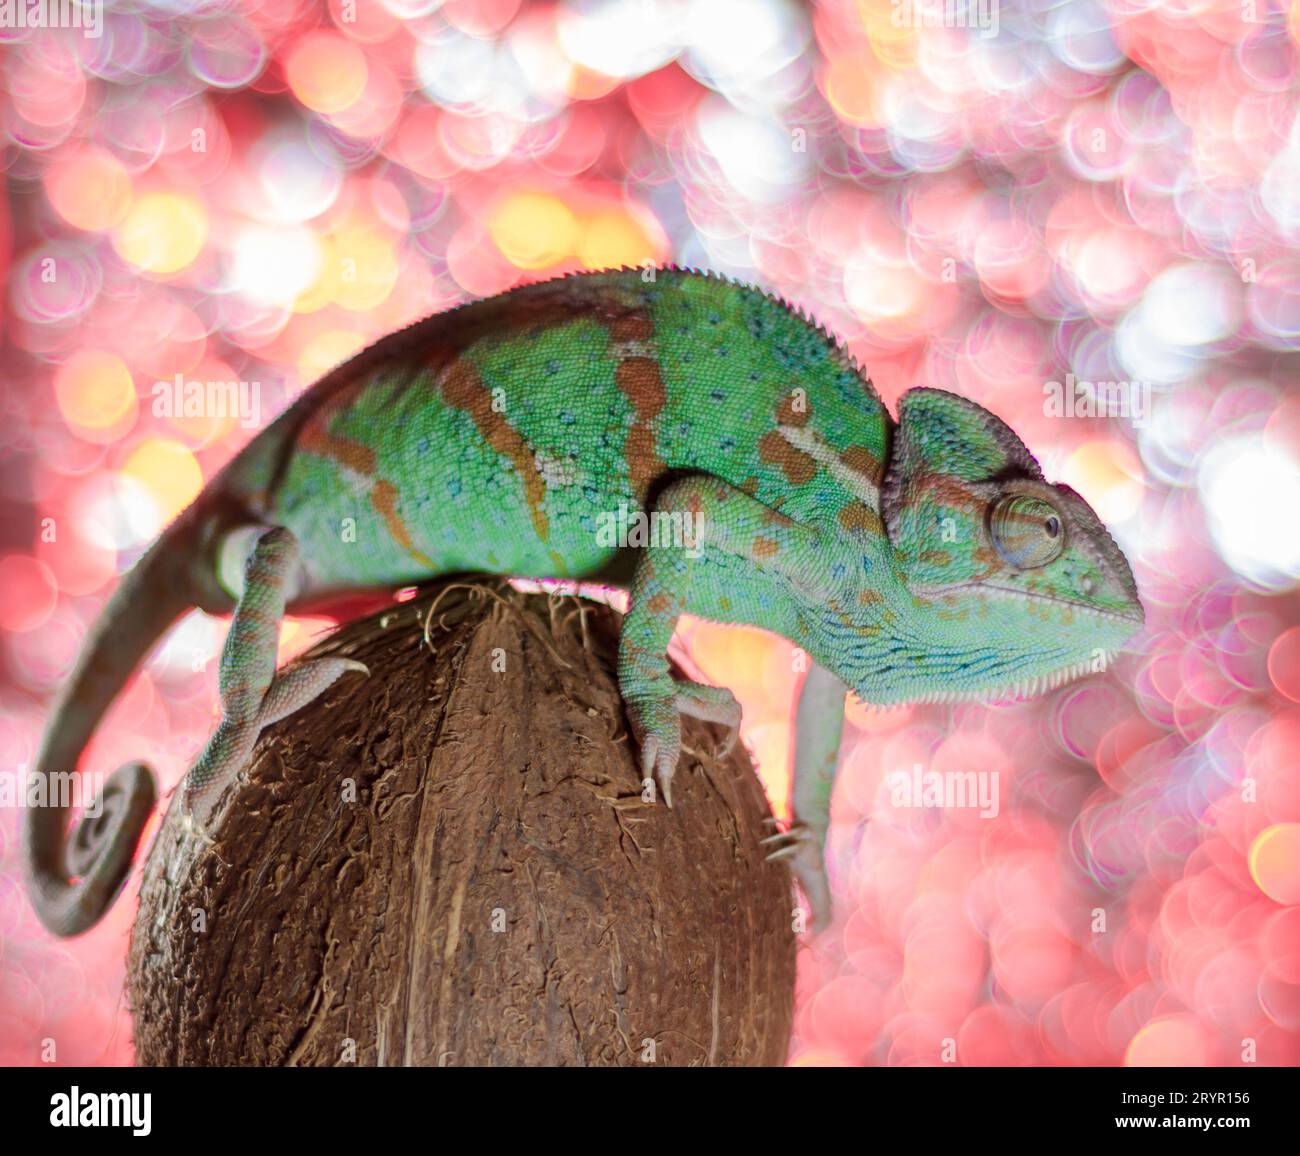 Grünes Chamäleon sitzt auf einer Kokosnuss auf einem farbigen Hintergrund Stockfoto